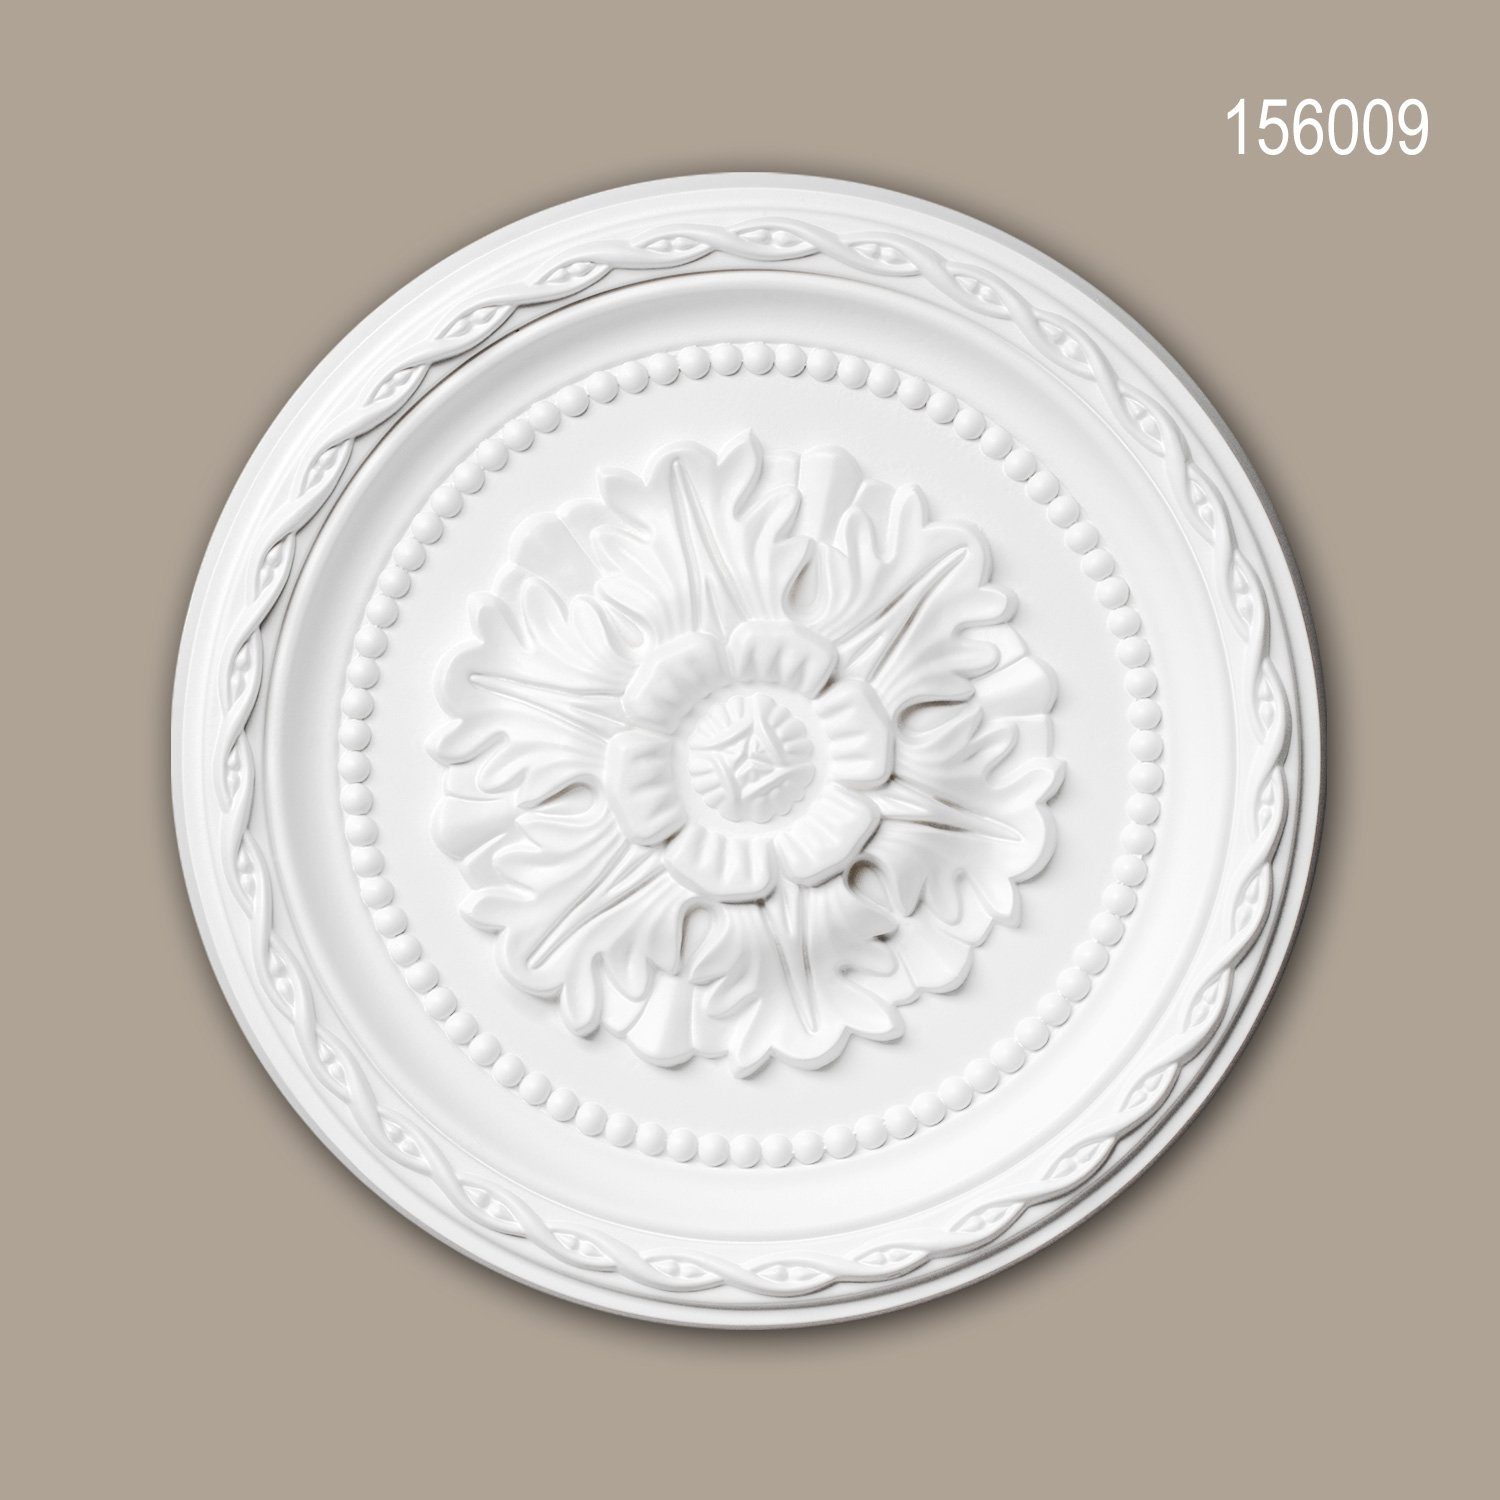 Profhome Decken-Rosette 156009 (Rosette, 1 St., Deckenrosette, Medallion, Stuckrosette, Deckenelement, Zierelement, Durchmesser 29,3 cm), weiß, vorgrundiert, Stil: Neo-Renaissance